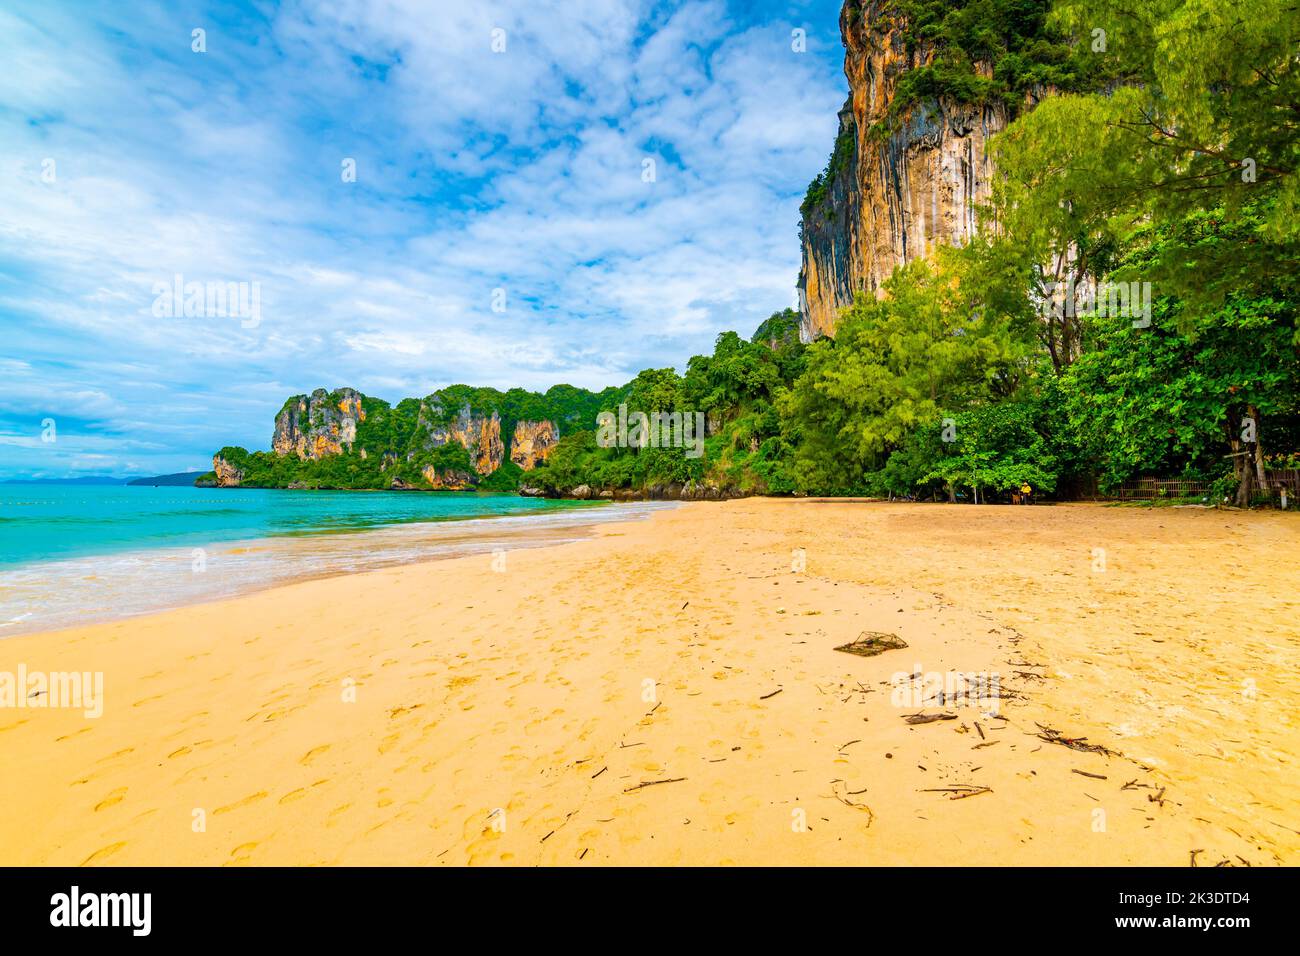 Vue panoramique sur la plage de Railay Krabi, Thaïlande. Magnifique paradis tropical avec eau douce bleue, sable chaud et roche calcaire au-dessus de la mer. Célèbre touri Banque D'Images